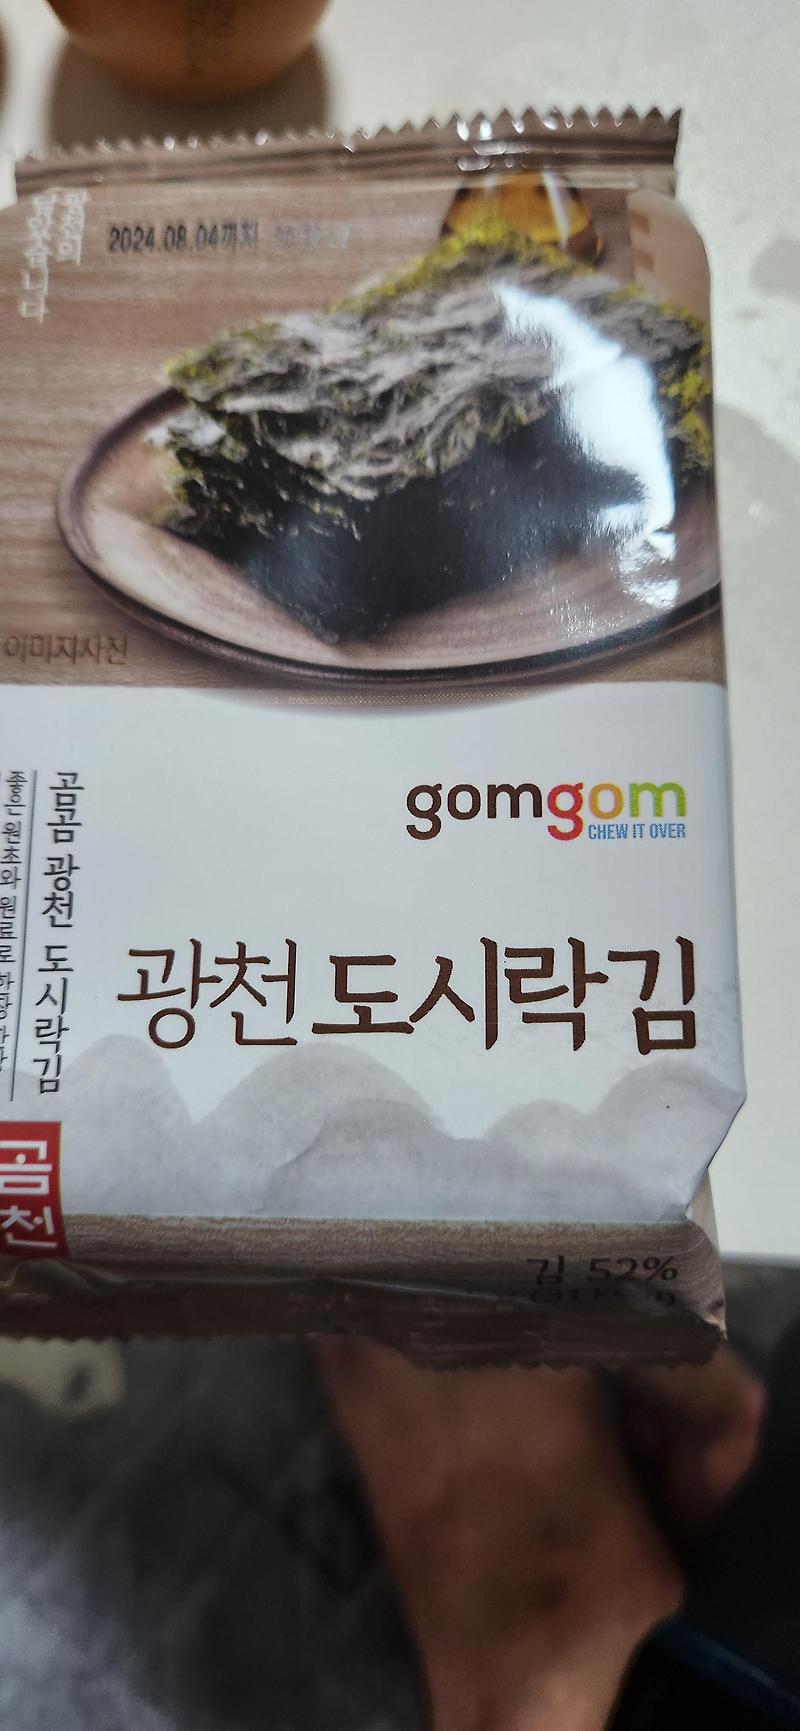 곰곰 gomgom 광천도시락김 가성비 만점 맛만점 쿠팡으로 구매